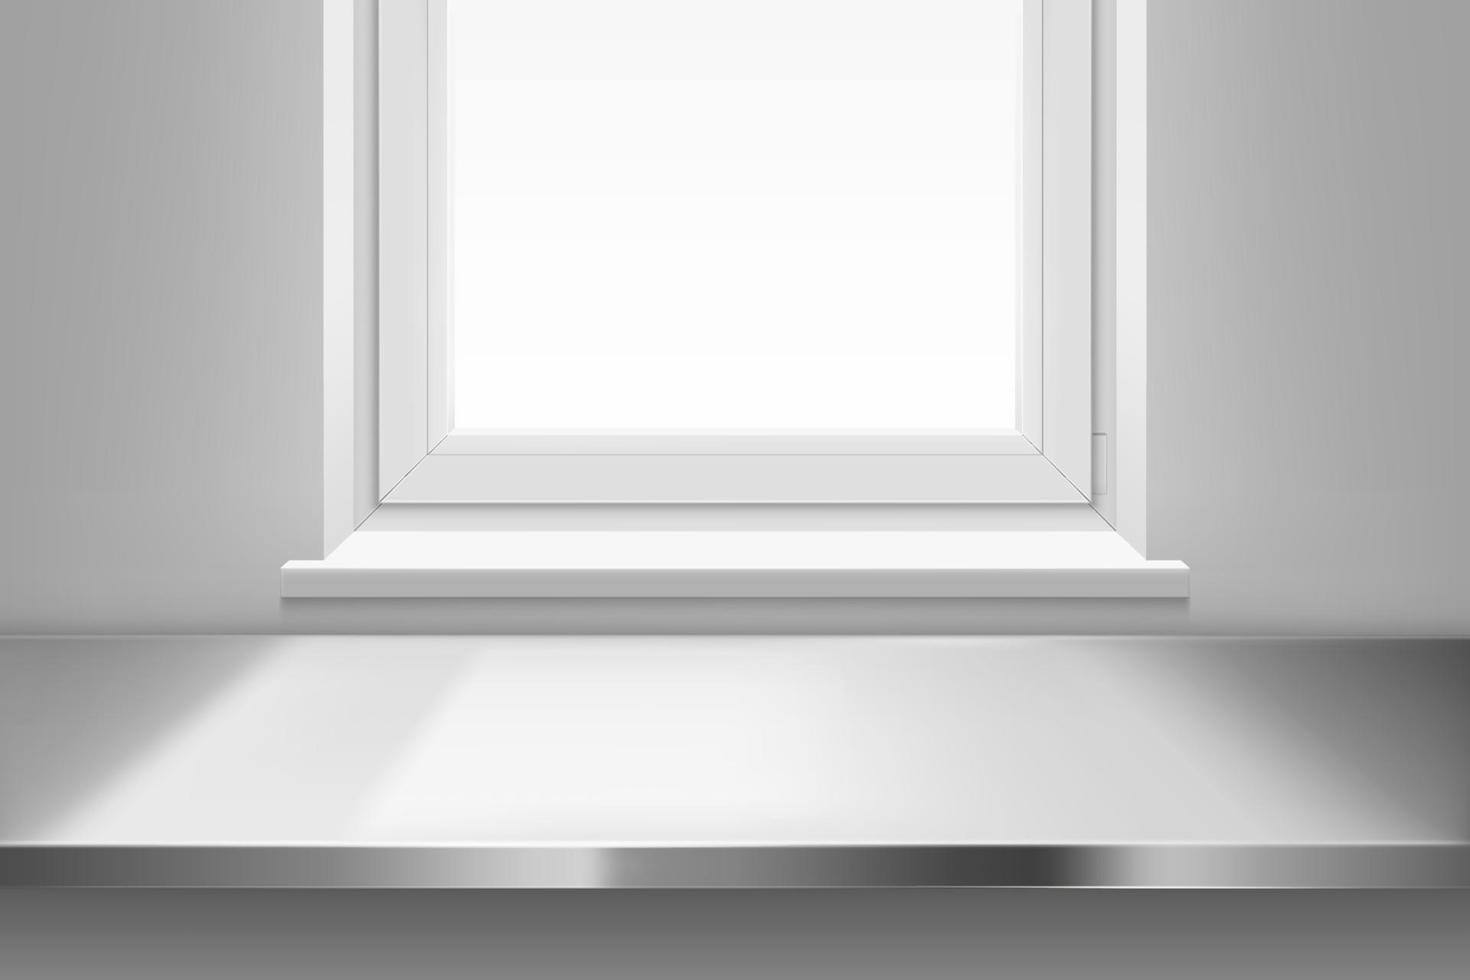 vista superior de la superficie de la mesa de acero frente a la ventana. vector